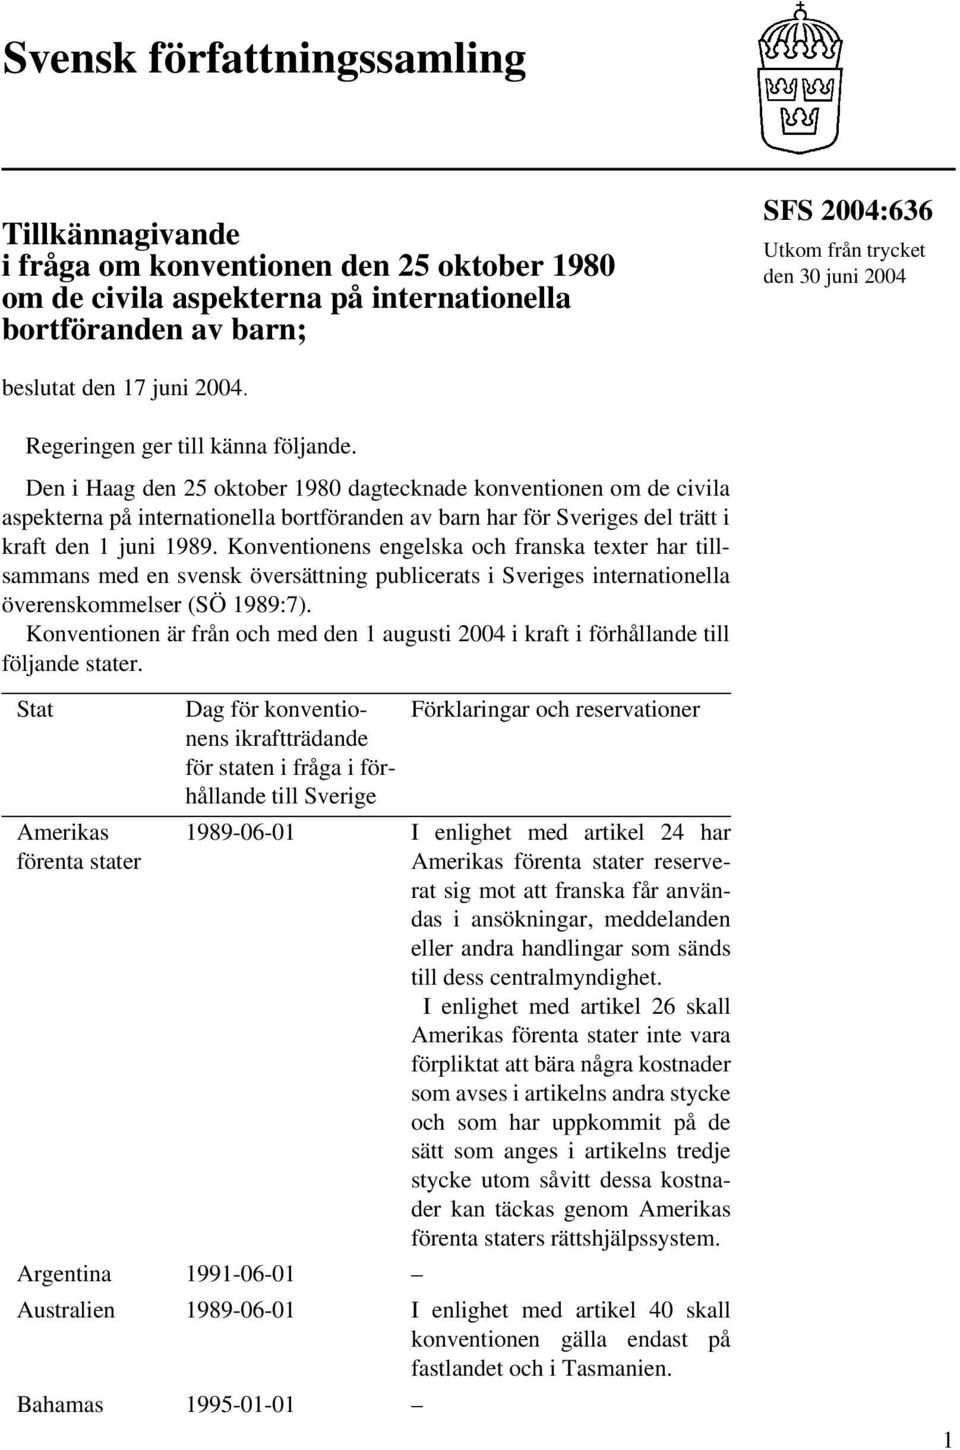 Den i Haag den 25 oktober 1980 dagtecknade konventionen om de civila aspekterna på internationella bortföranden av barn har för Sveriges del trätt i kraft den 1 juni 1989.